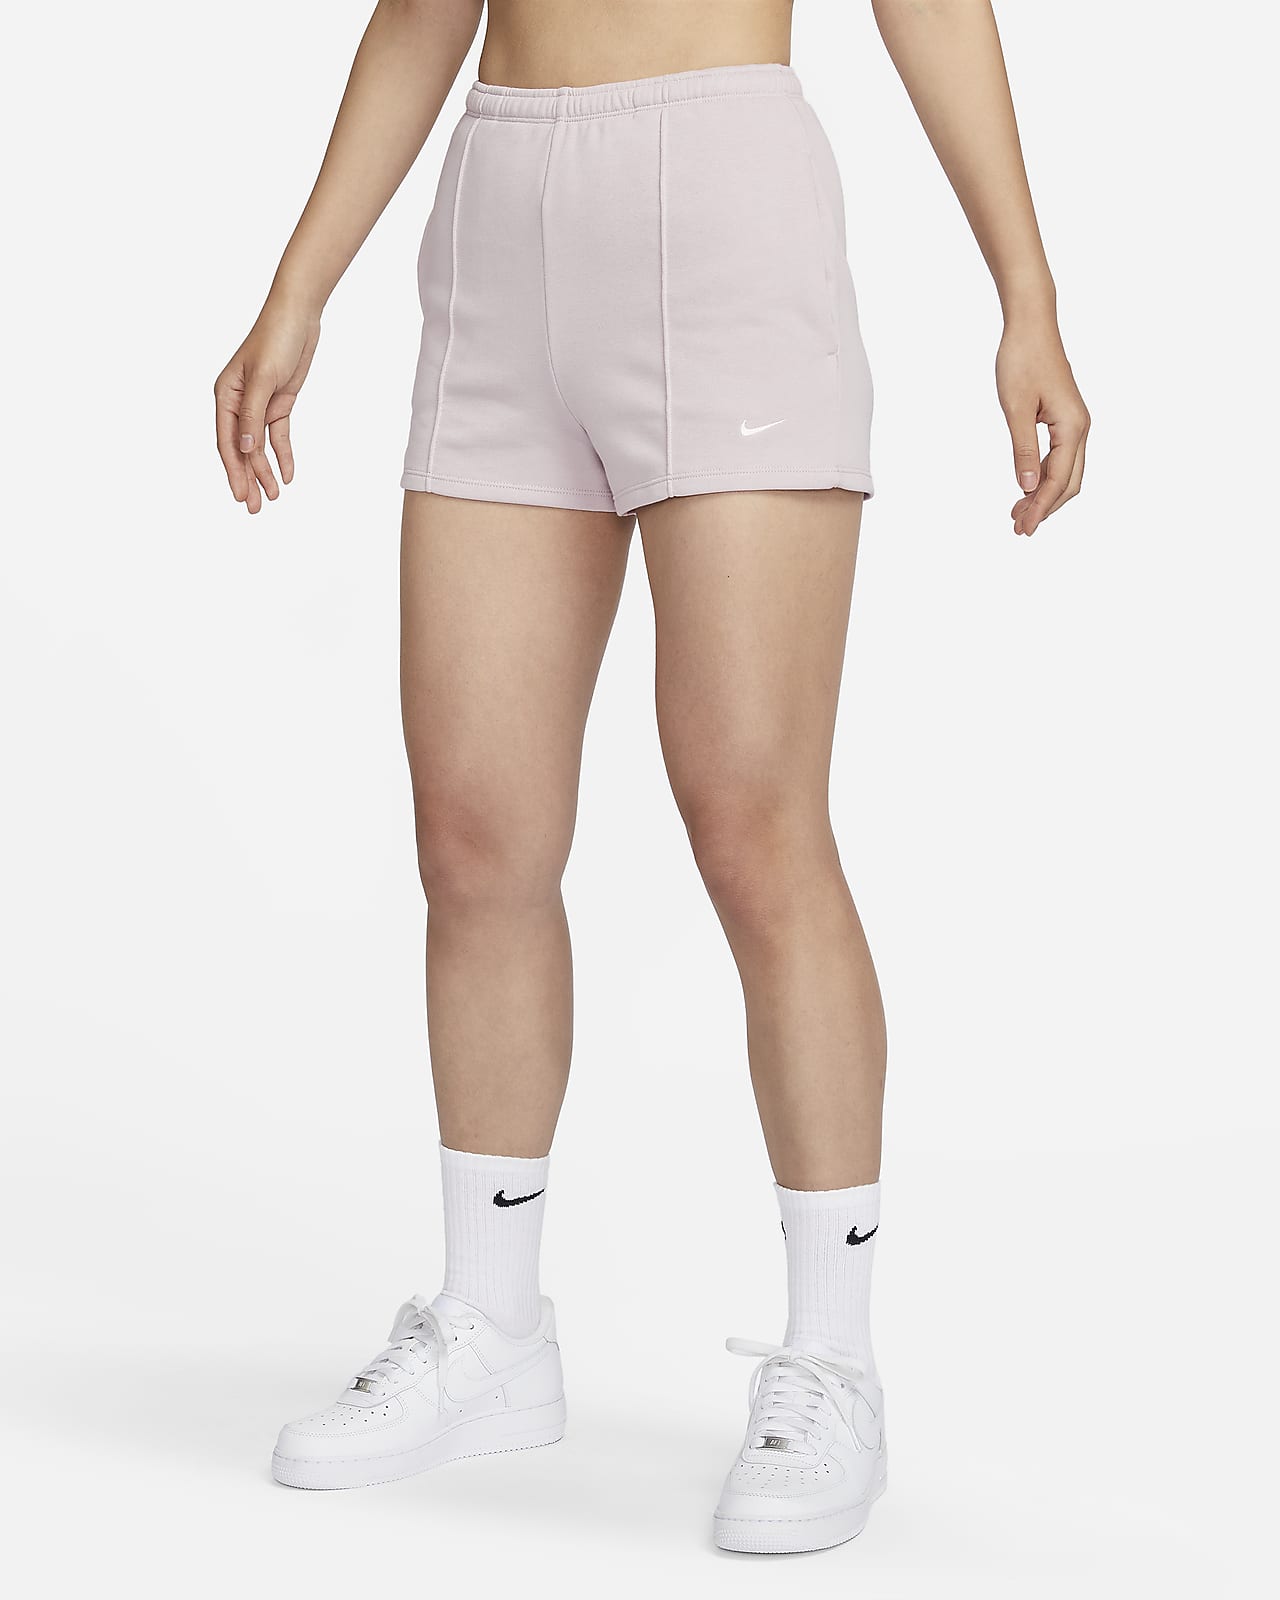 กางเกงขาสั้นผ้าเฟรนช์เทรีทรงเข้ารูปเอวสูง 2 นิ้วผู้หญิง Nike Sportswear Chill Terry